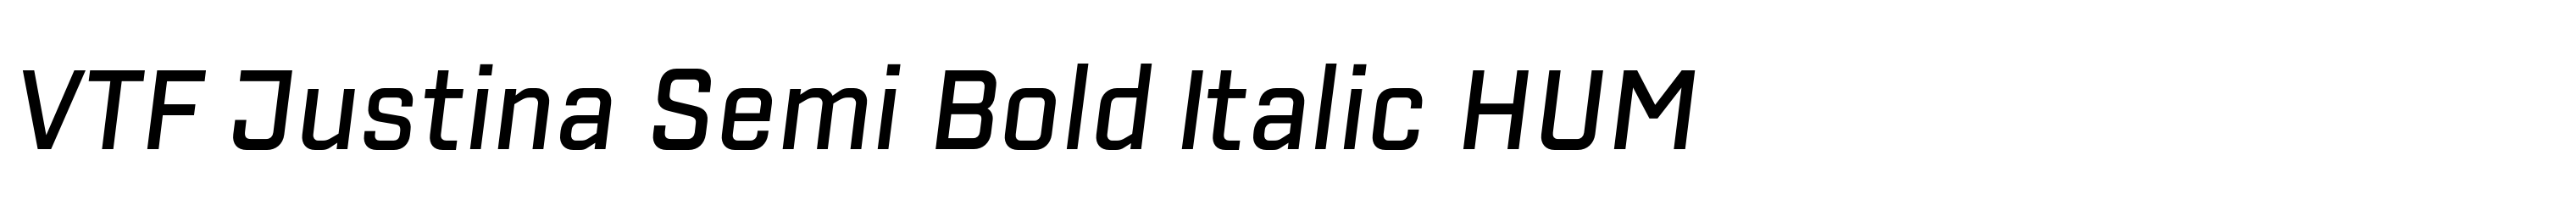 VTF Justina Semi Bold Italic HUM